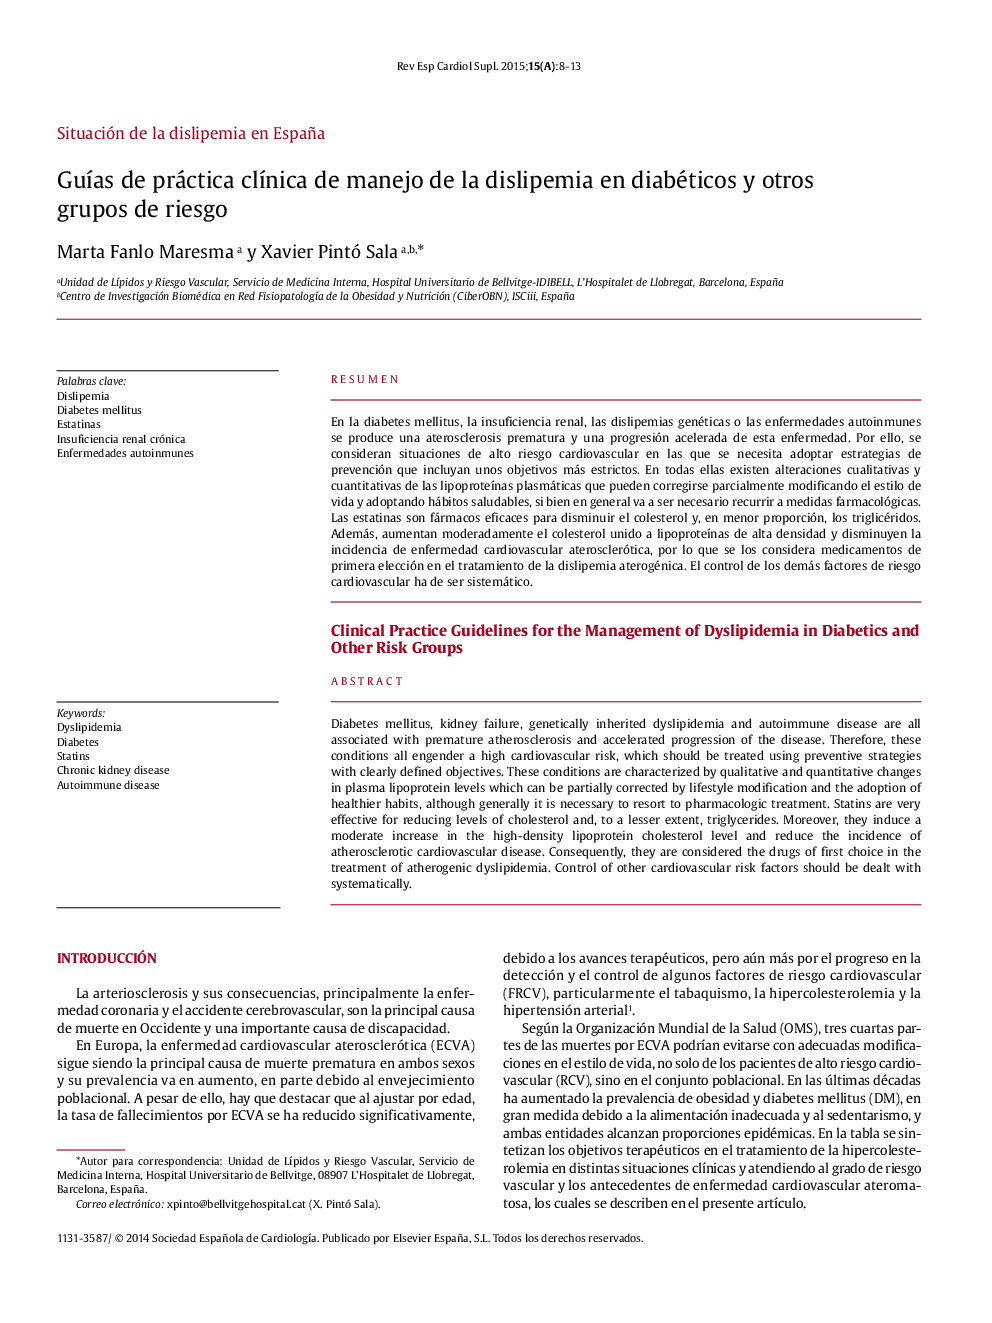 Guías de práctica clínica de manejo de la dislipemia en diabéticos y otros grupos de riesgo